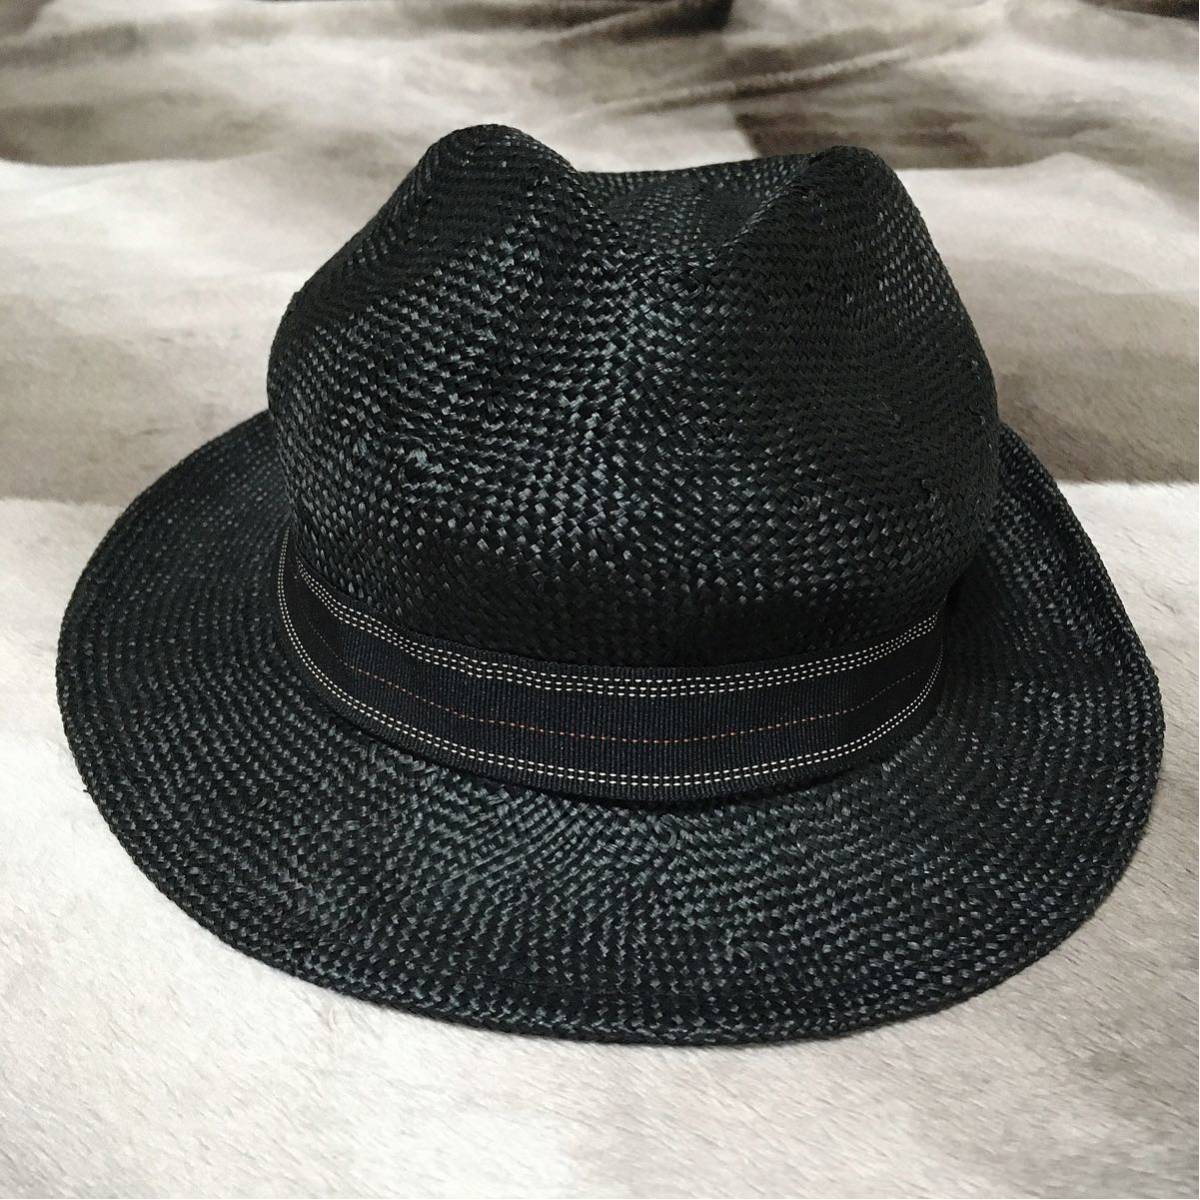 [薄荷]標準草帽黑色/ CA4LA帽子 原文:【美品】定番ストローハット 黒/ CA4LA 帽子